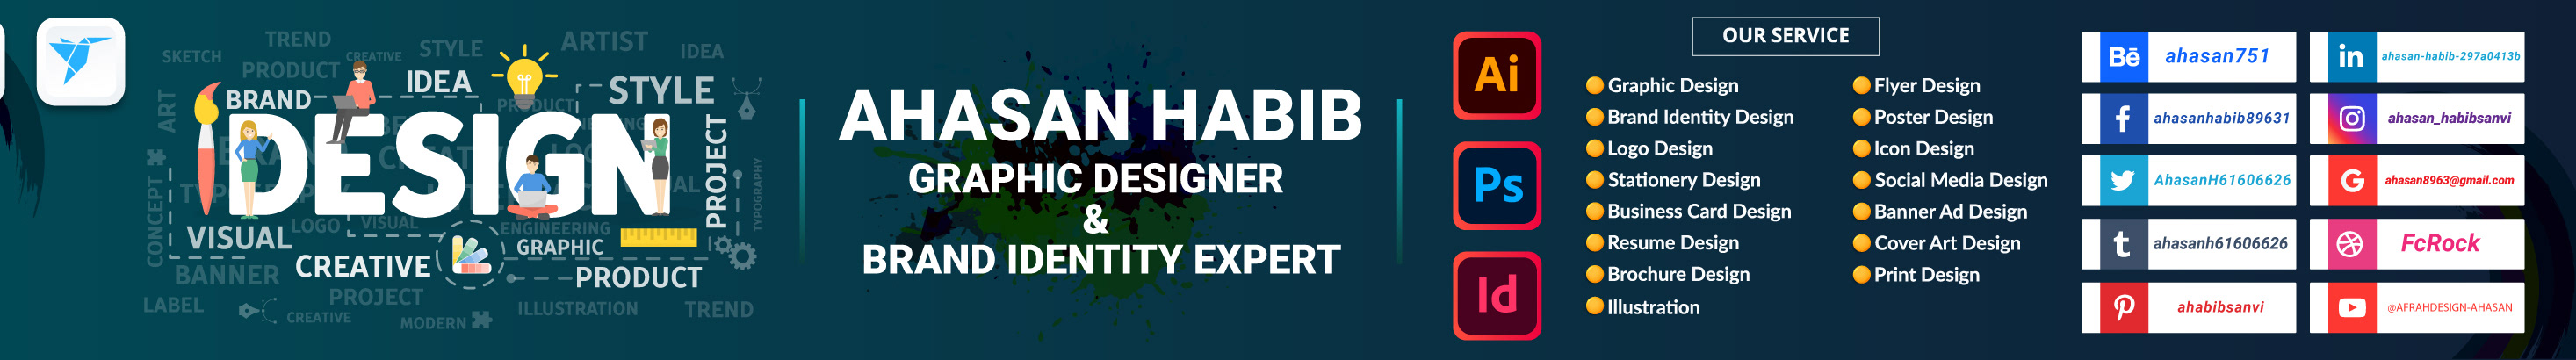 Ahasan Habib's profile banner